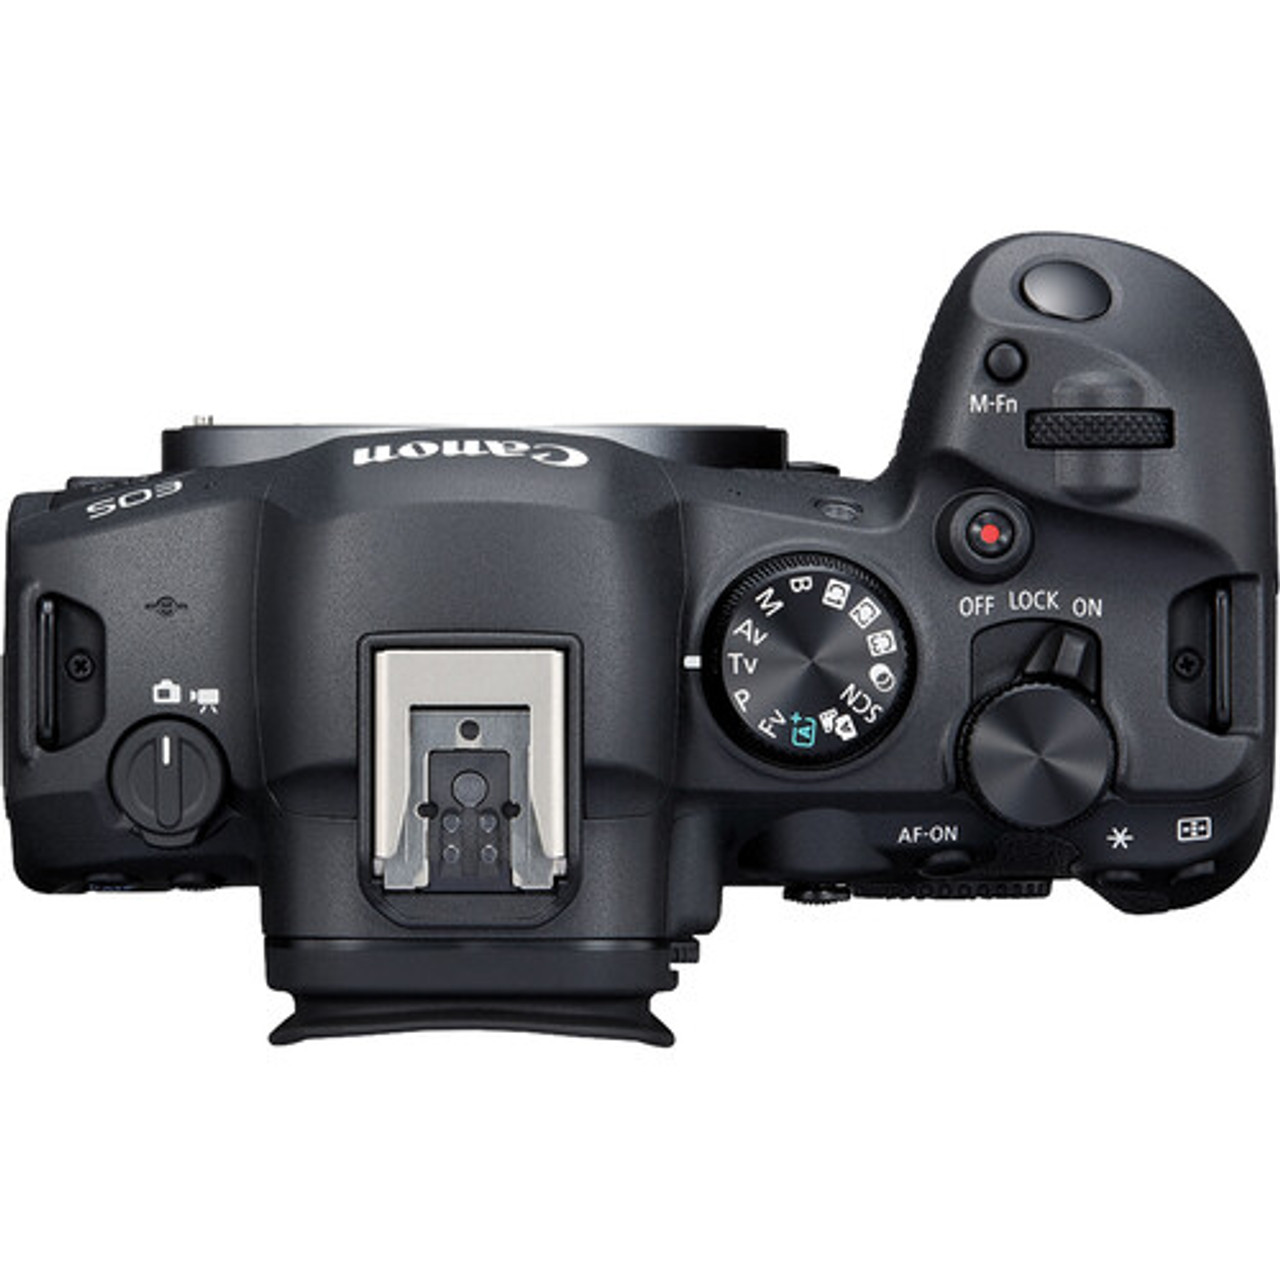 Cámara Polaroid NOW+ Gen 2 Black - Foto R3, film lab y fotografía analógica